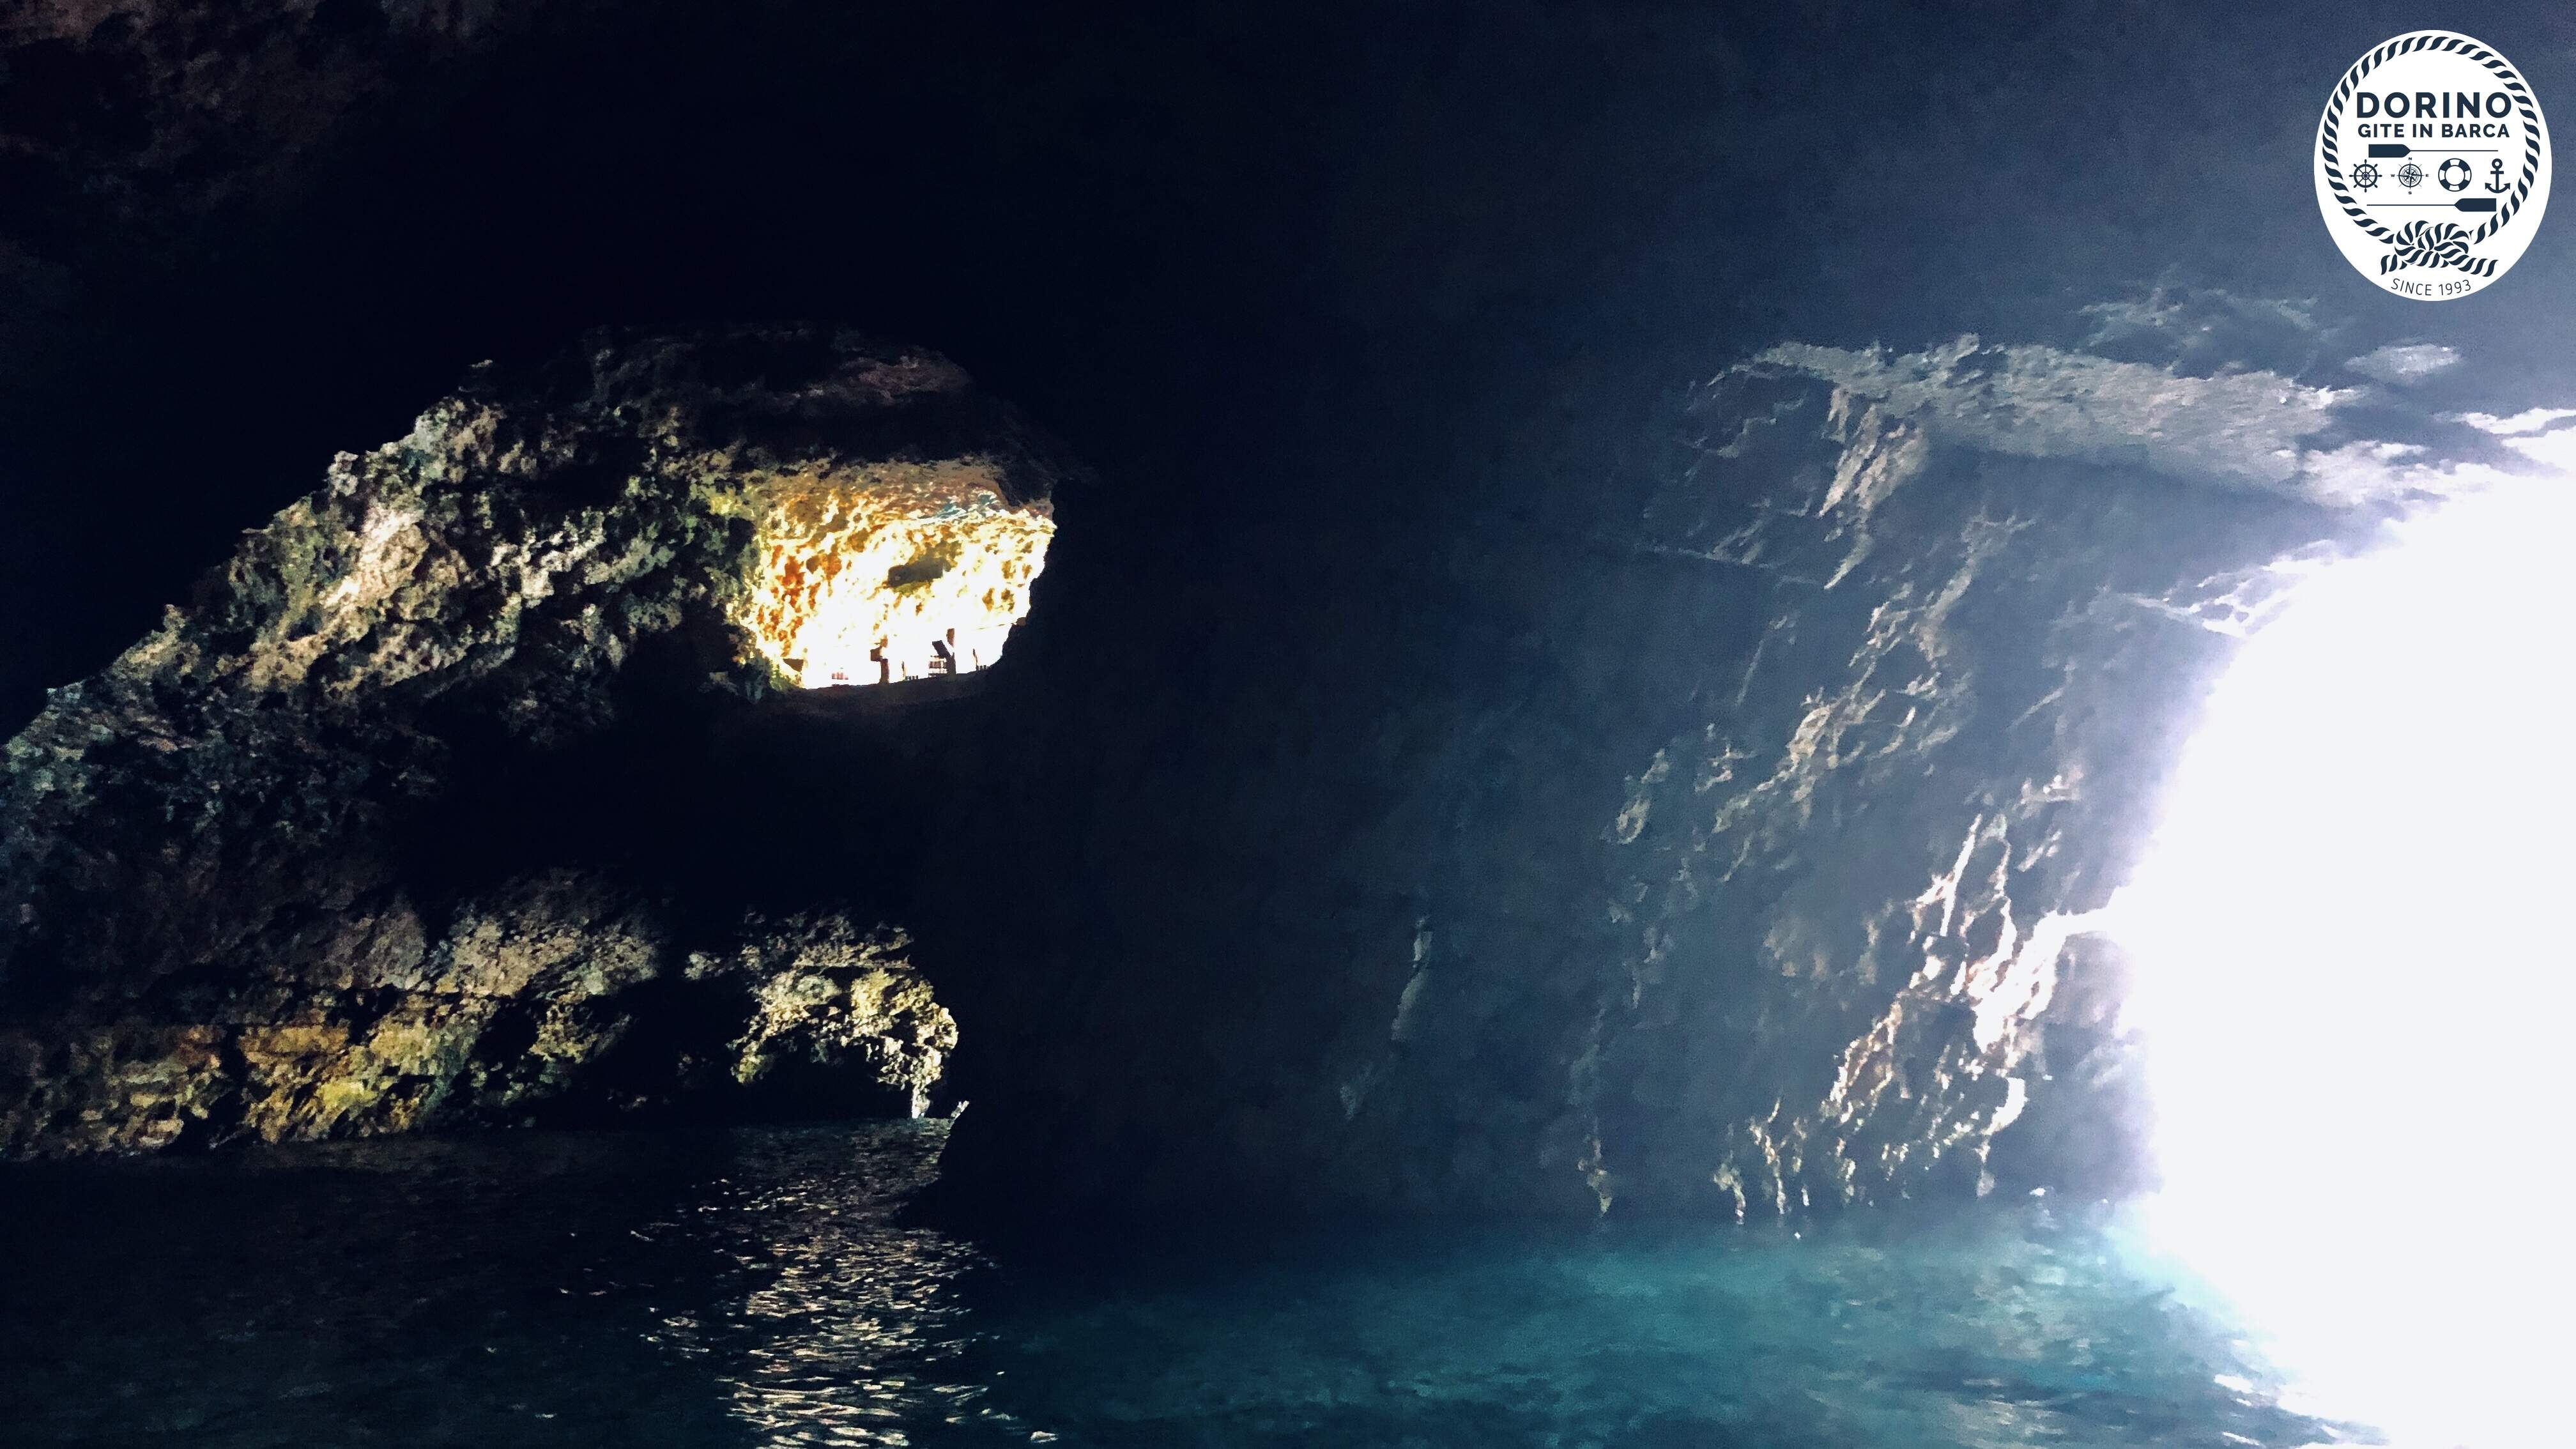 Vista spighetta, grotta palazzese. Uno dei luoghi più romantici del mondo